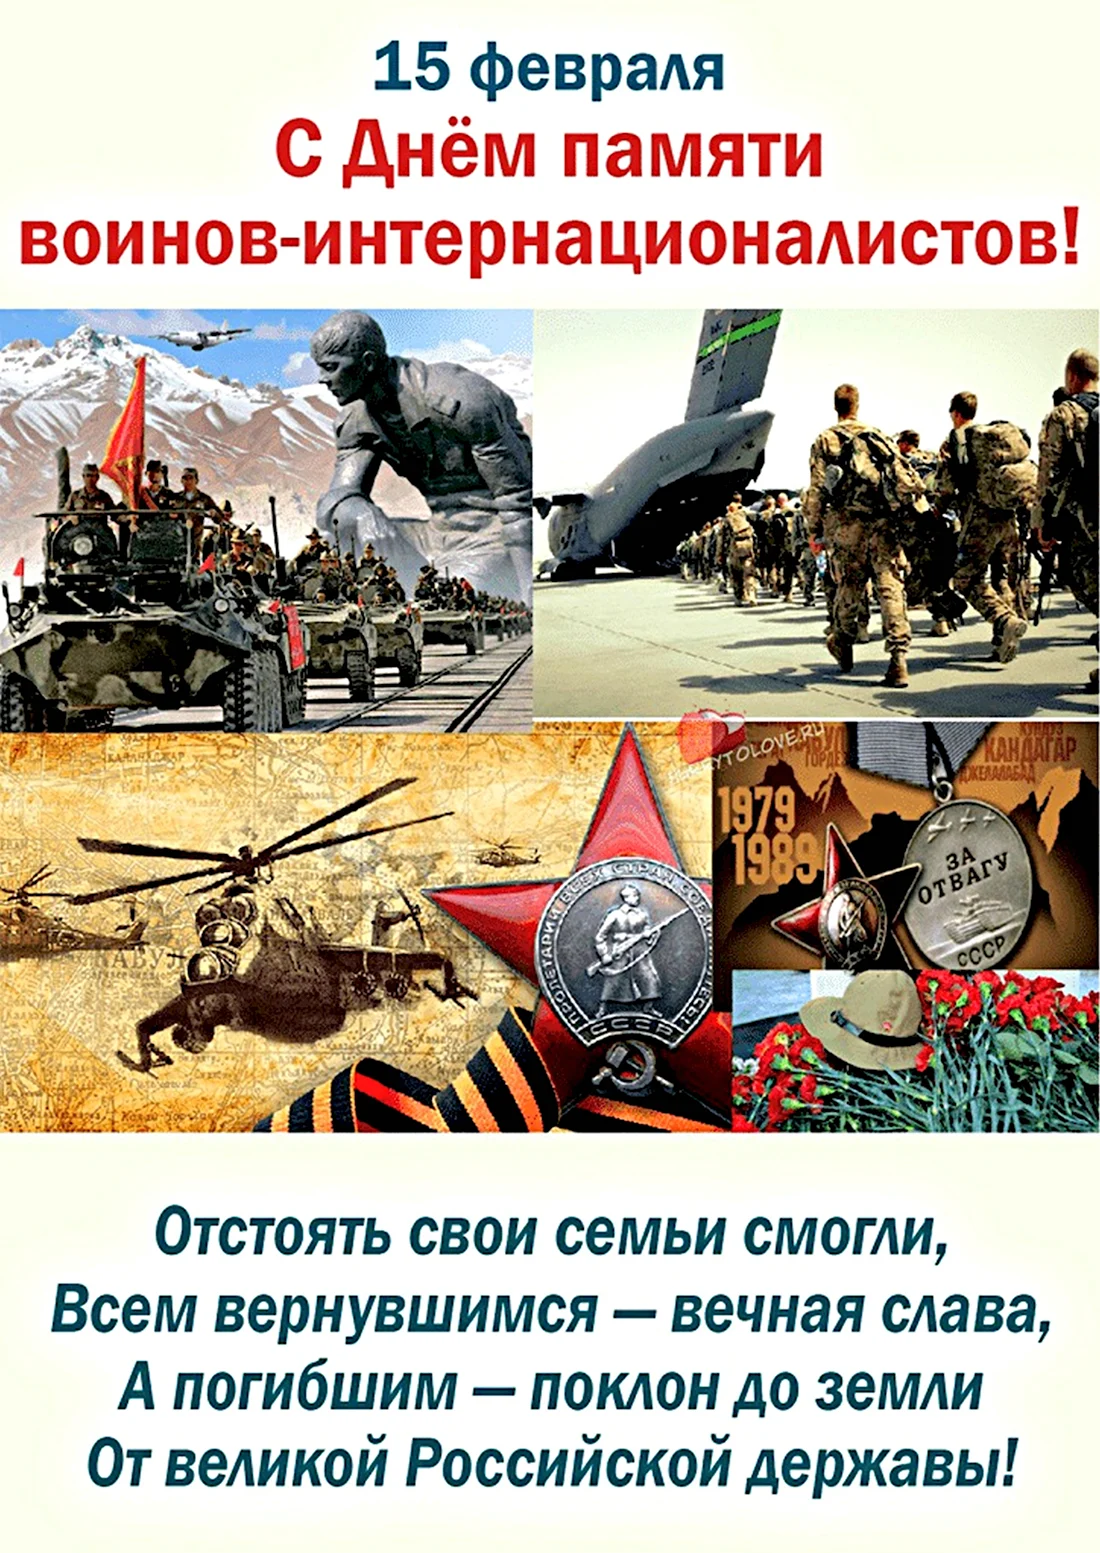 15 Февраля день памяти воинов интернационалистов. Поздравление на праздник